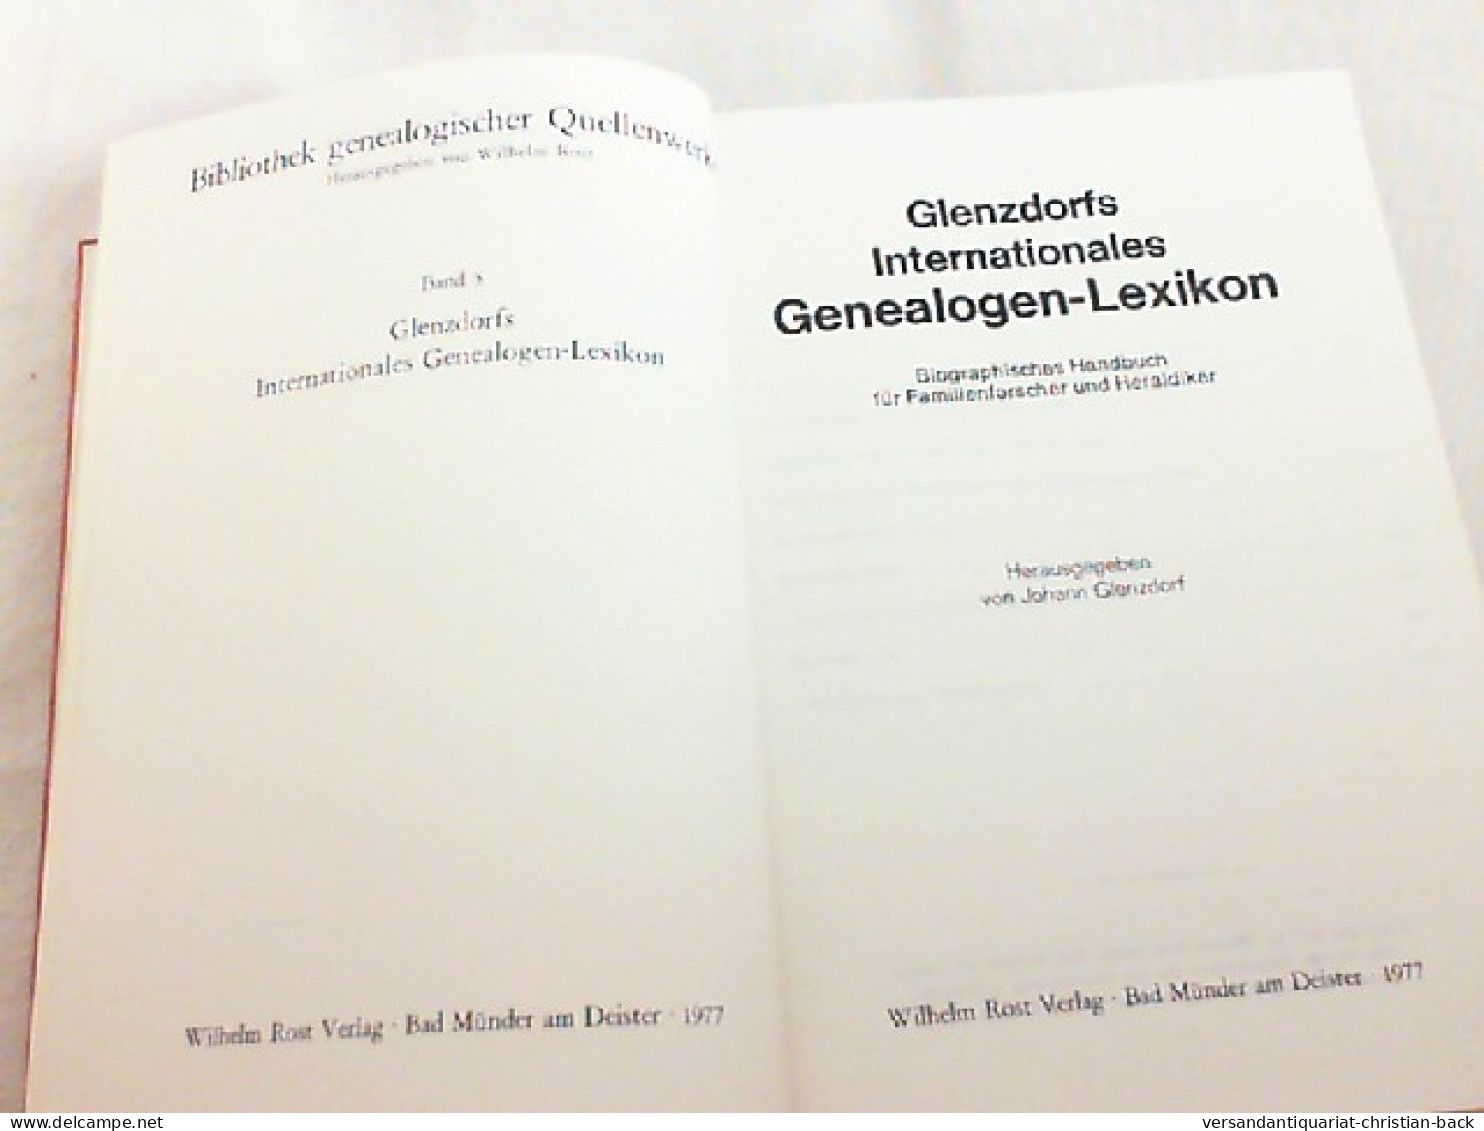 Glenzdorfs Internationales Genealogen Lexikon - Band 5 - Biographisches Handbuch Für Familienforscher Und Fam - Lessico